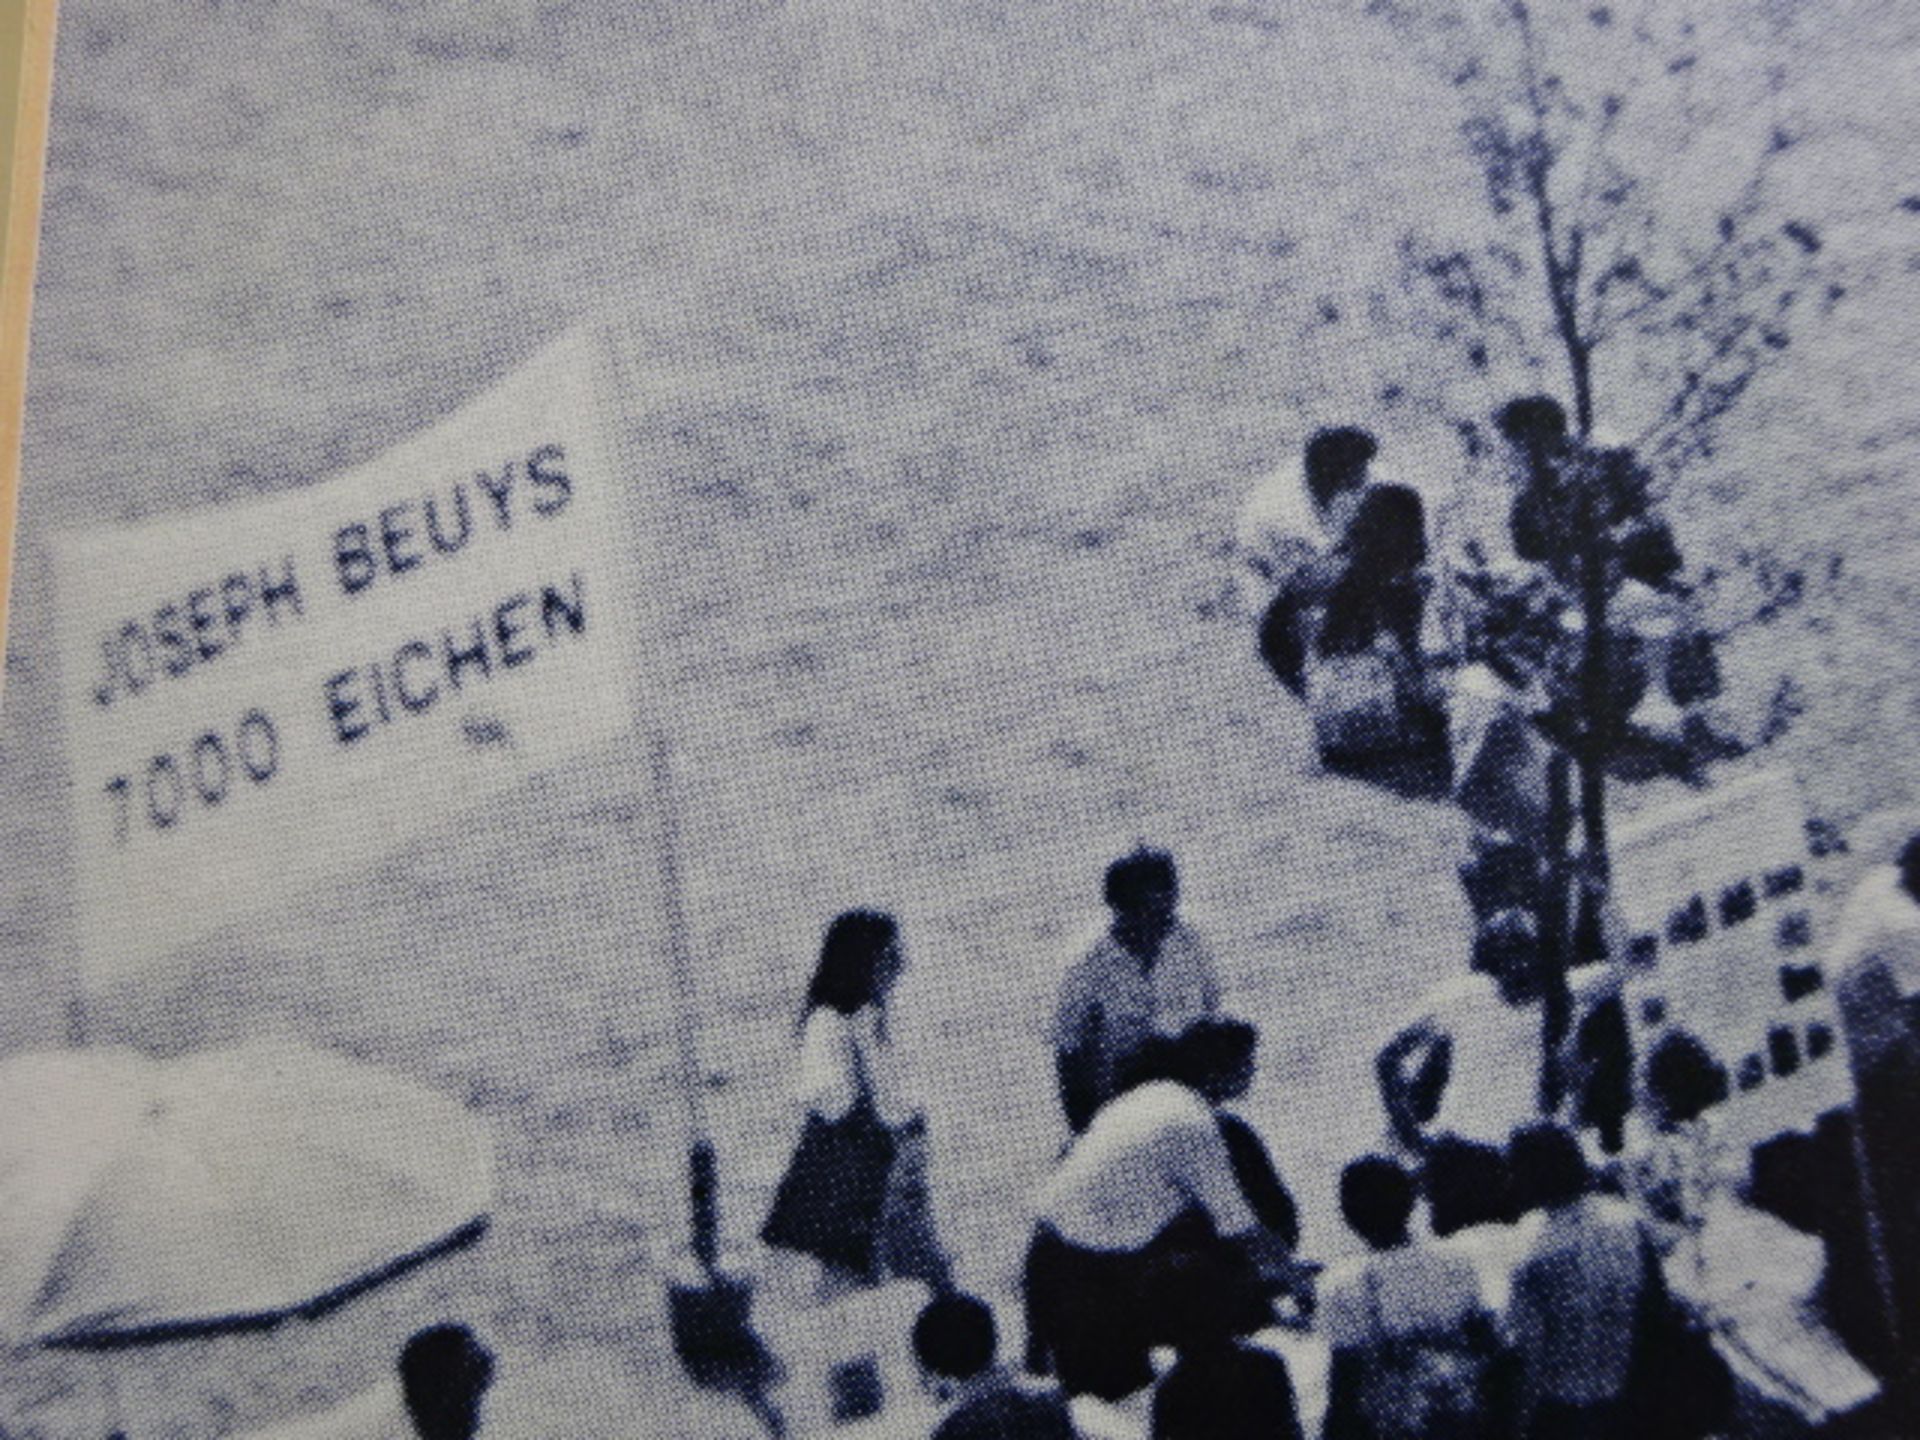 Beuys - 7000 Eichen signiert